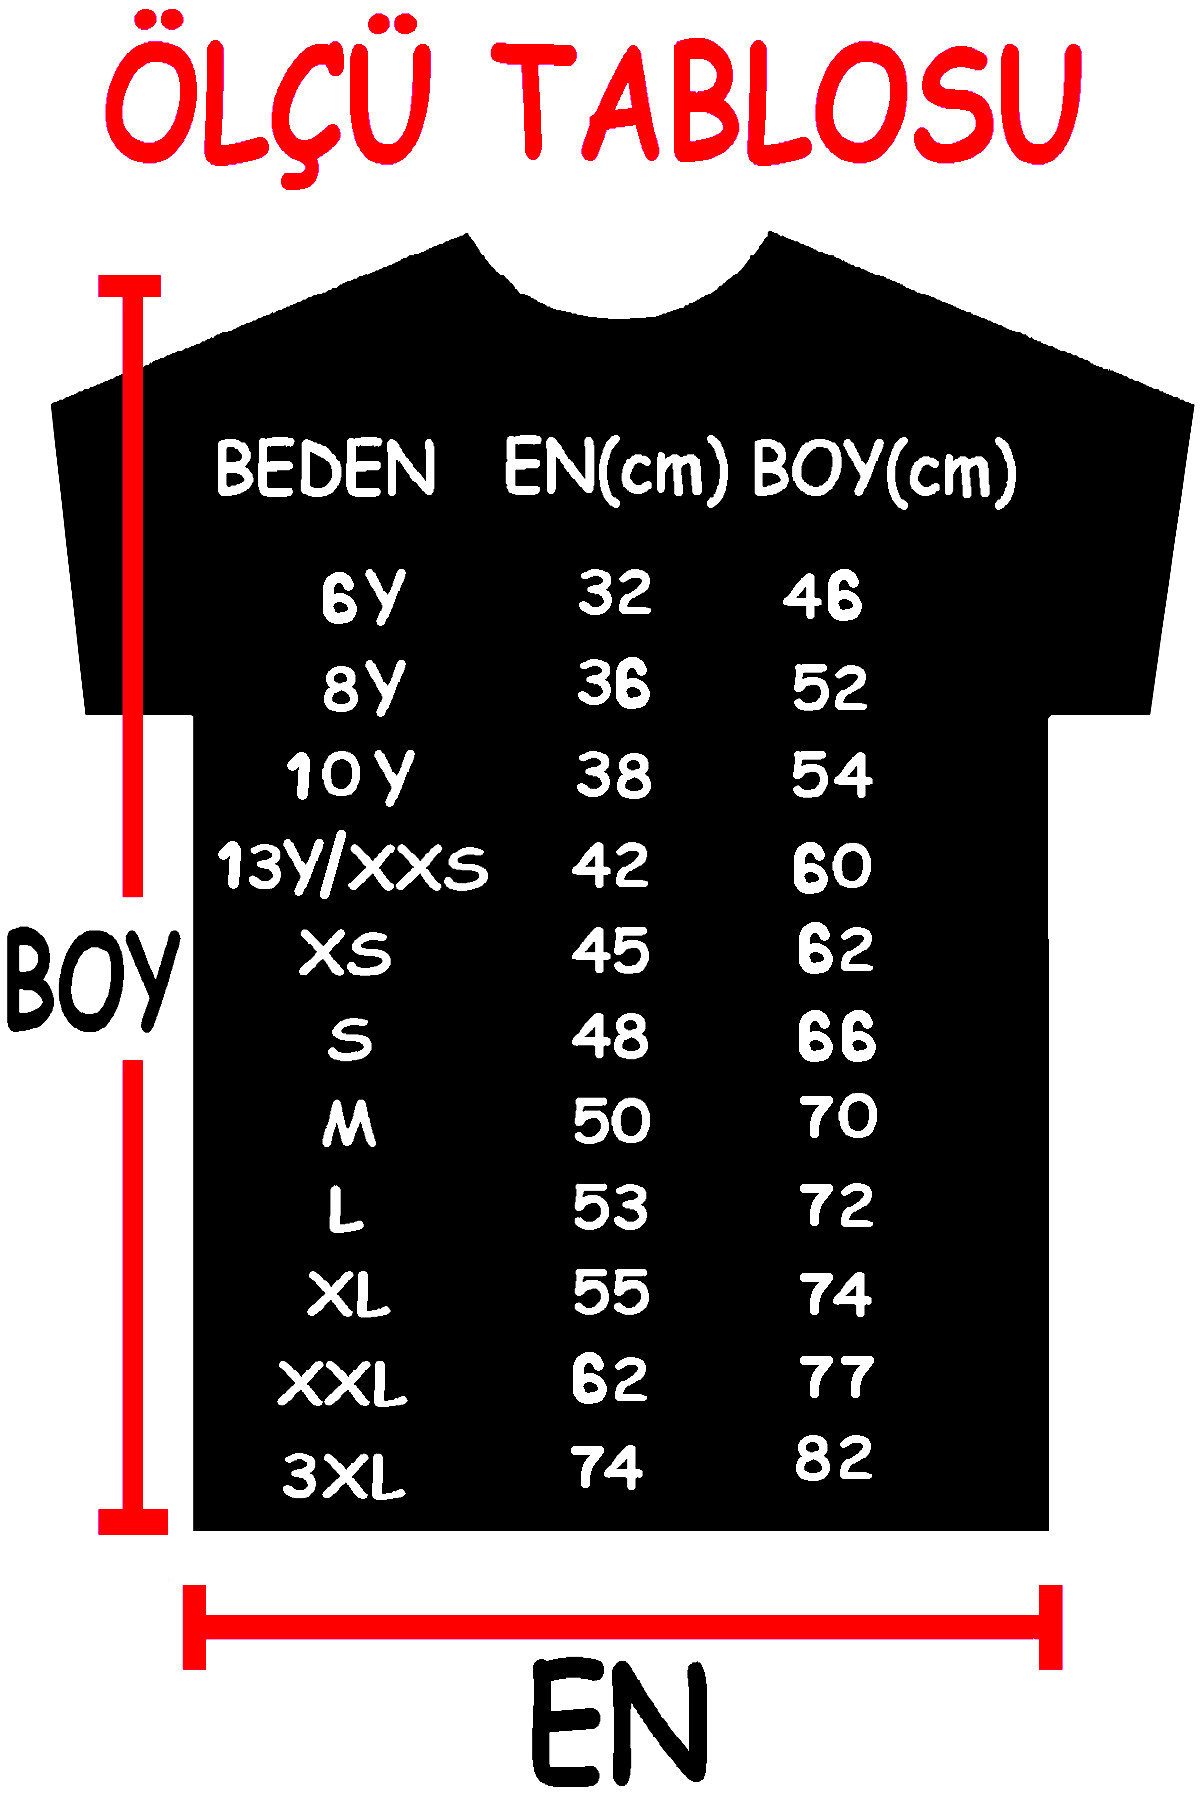 Güneşli Türkiye Siyah Kısa Kollu Erkek Çocuk T-shirt